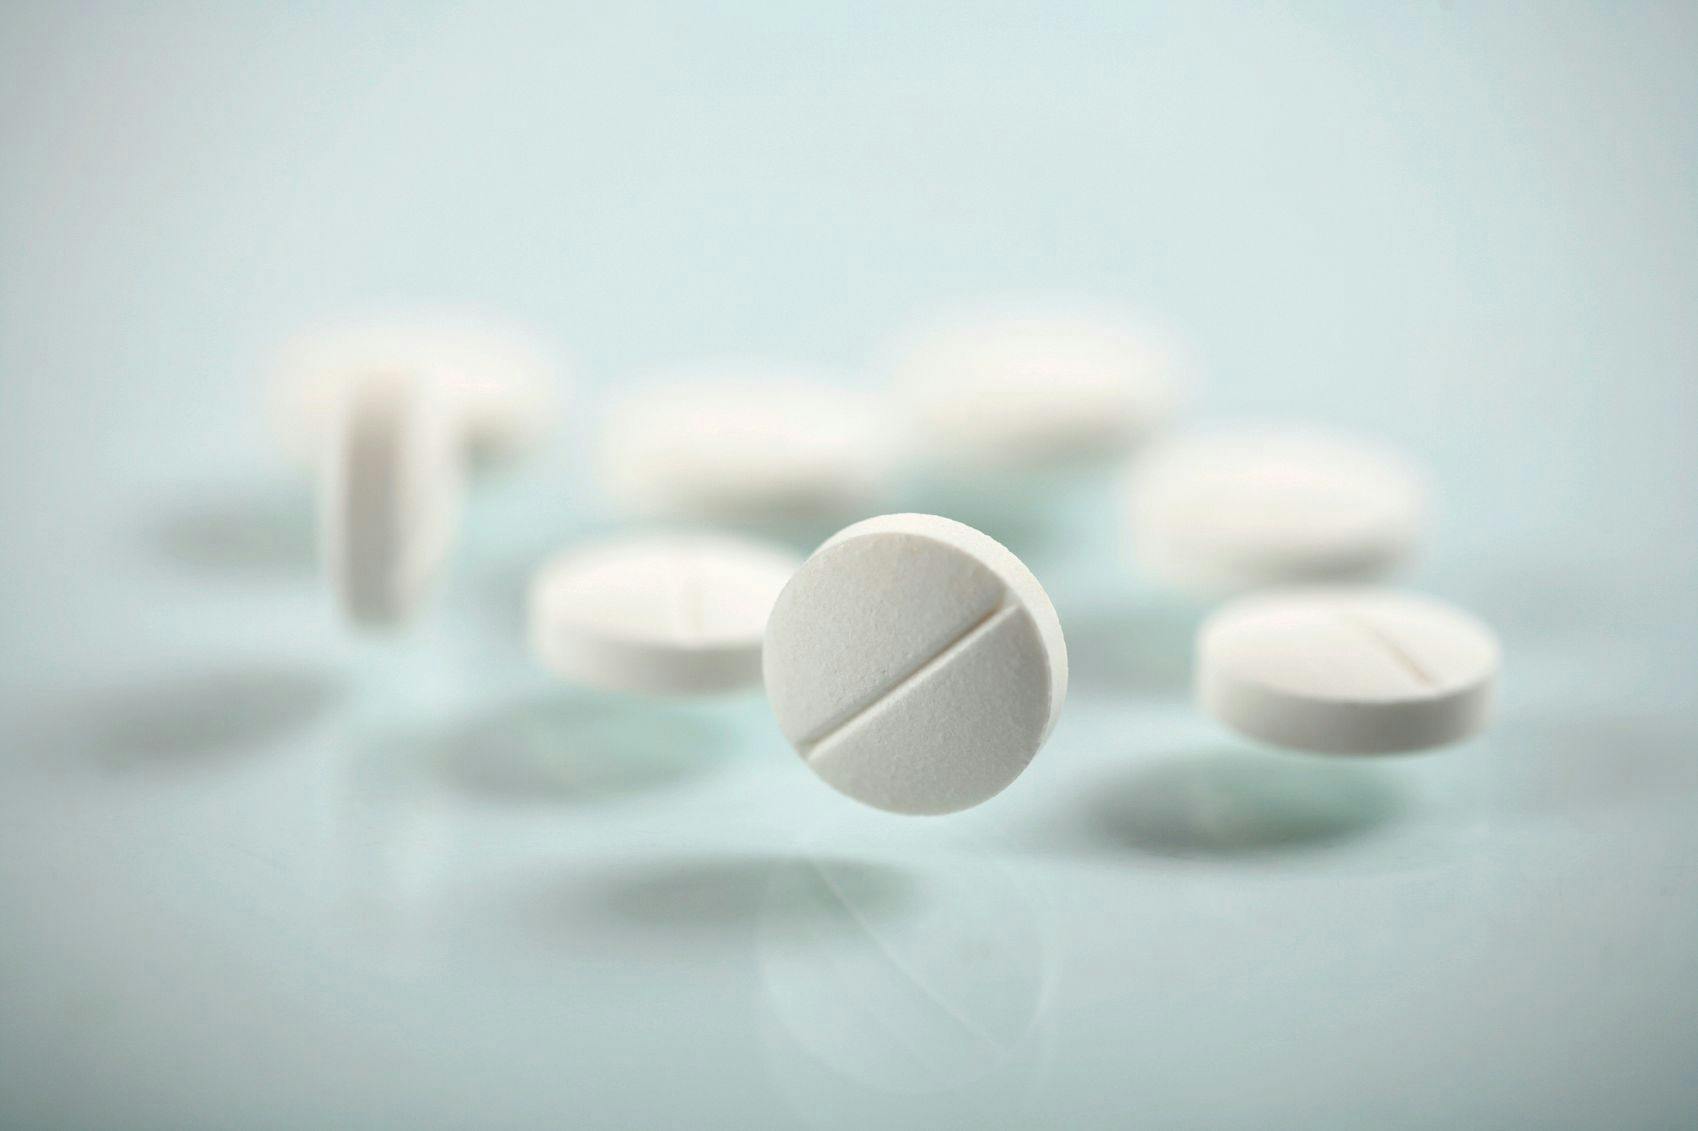 Image of white circular pills.